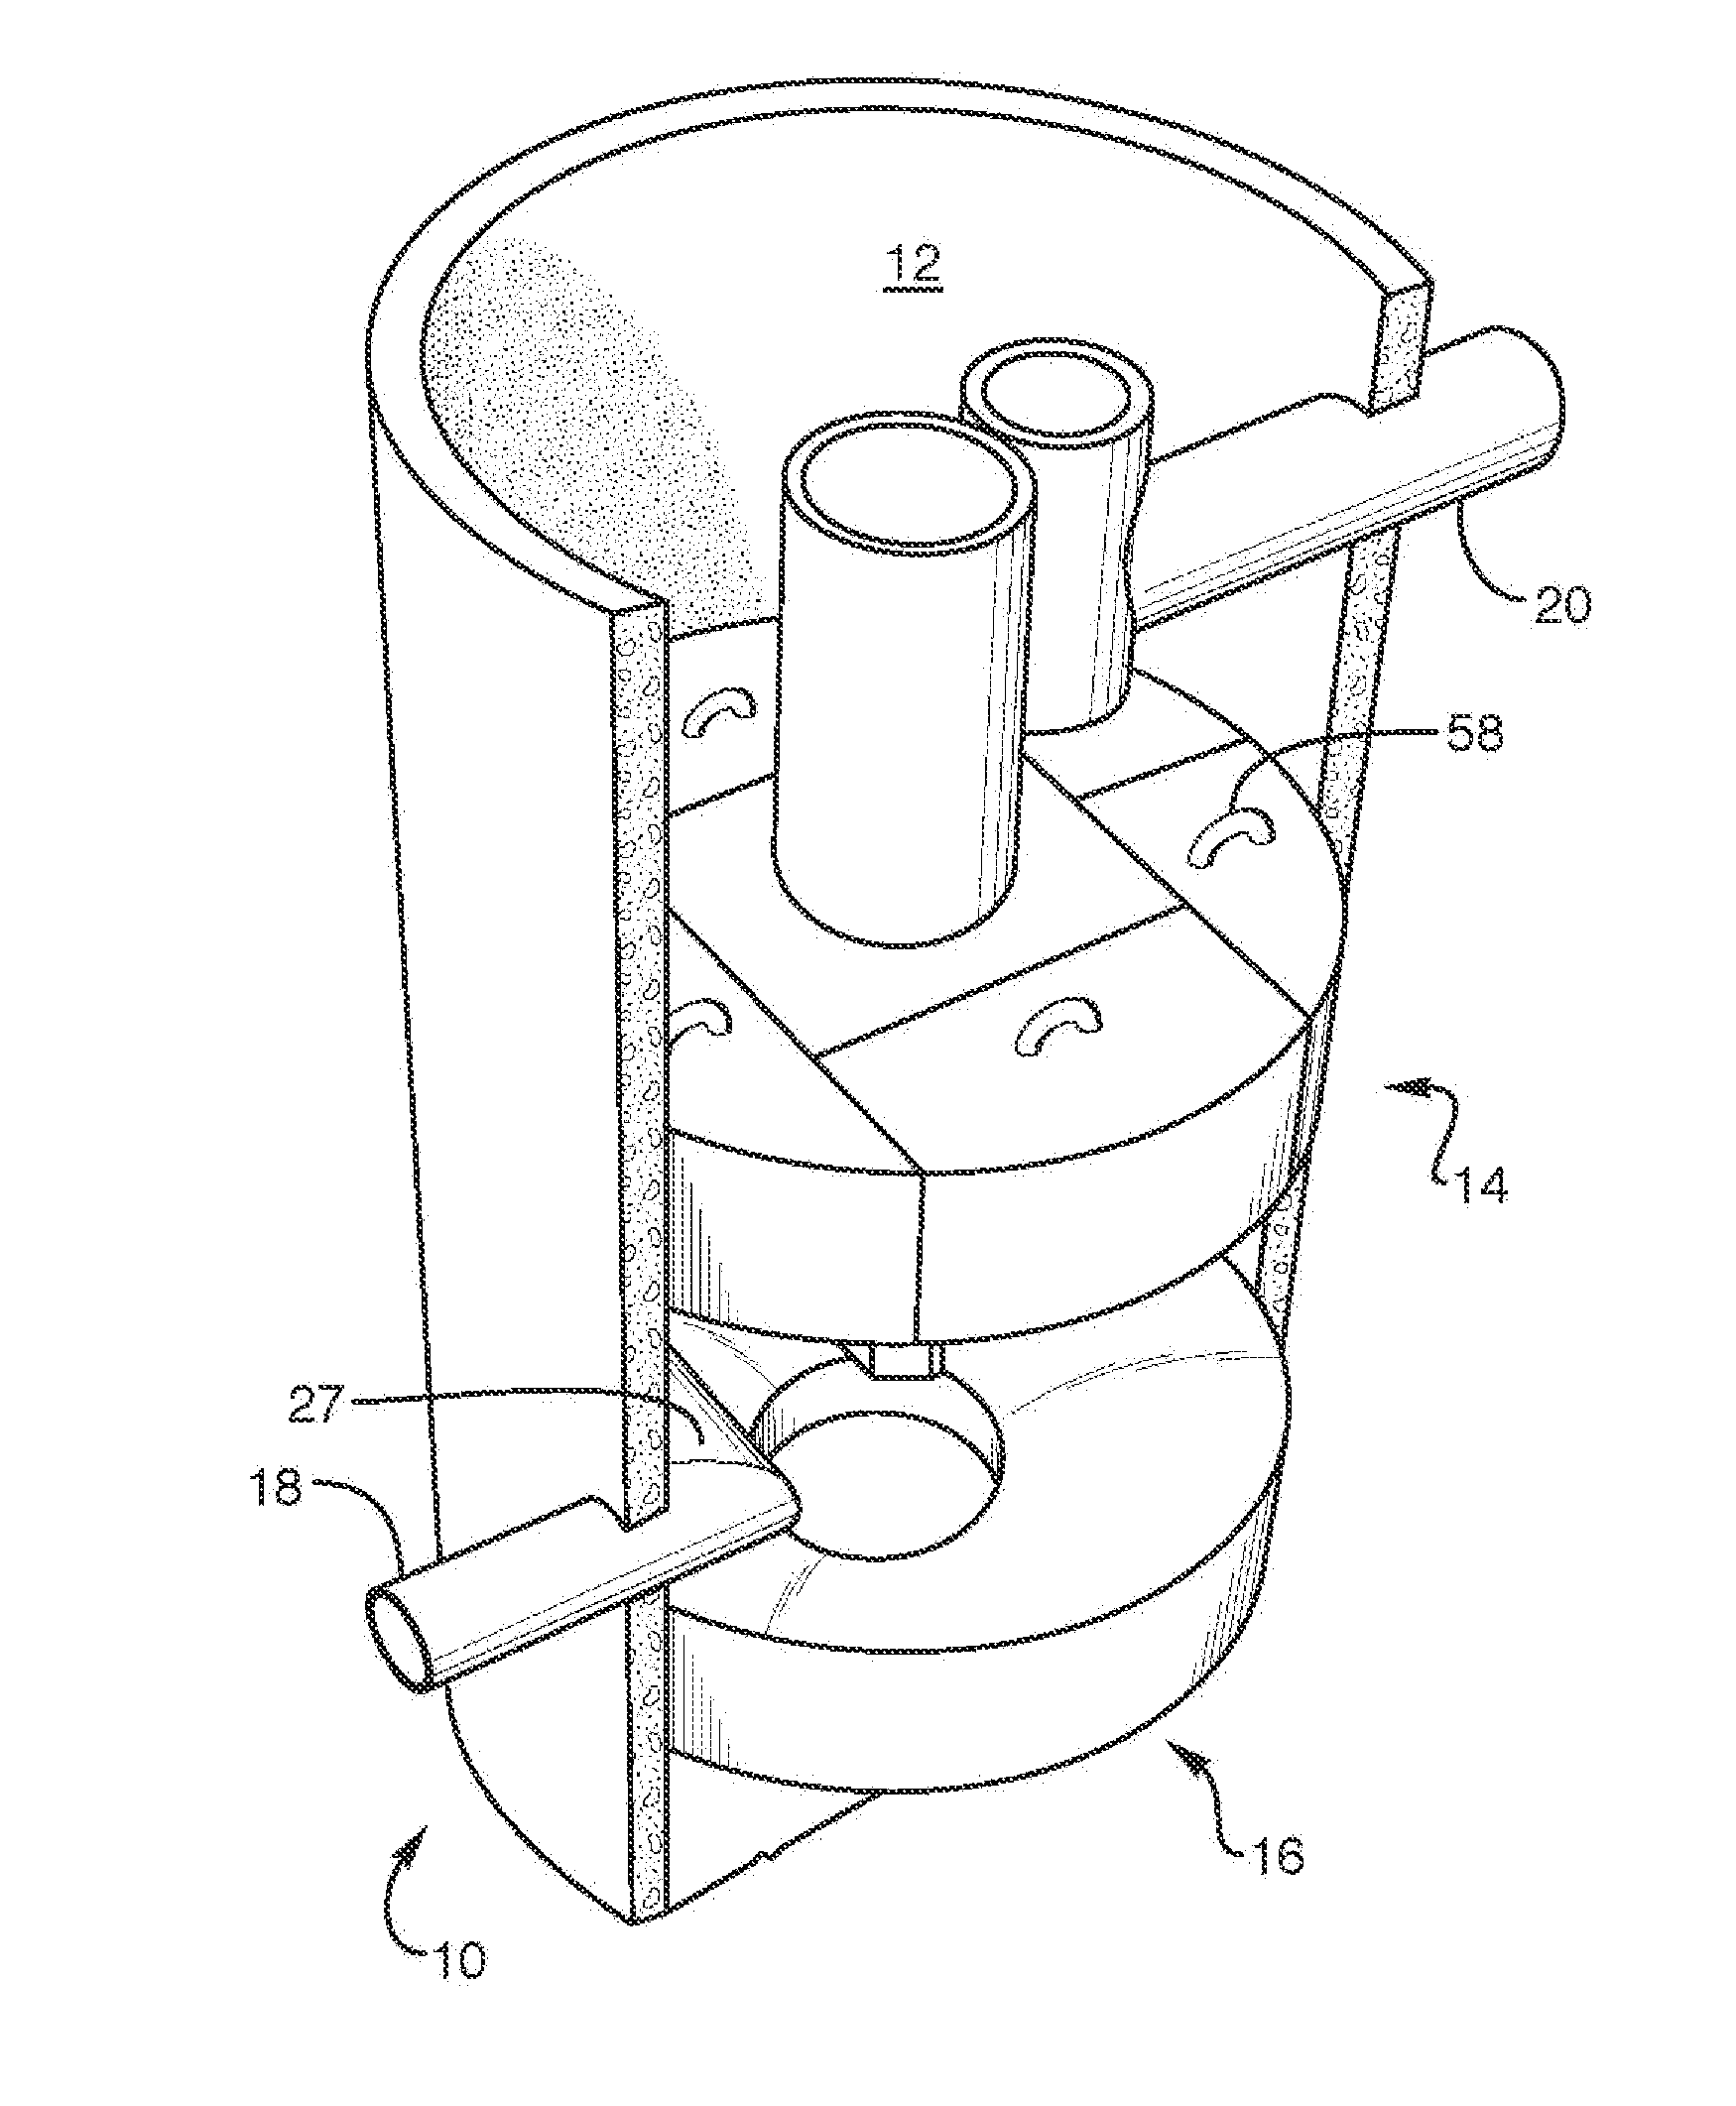 Liquid filtration system